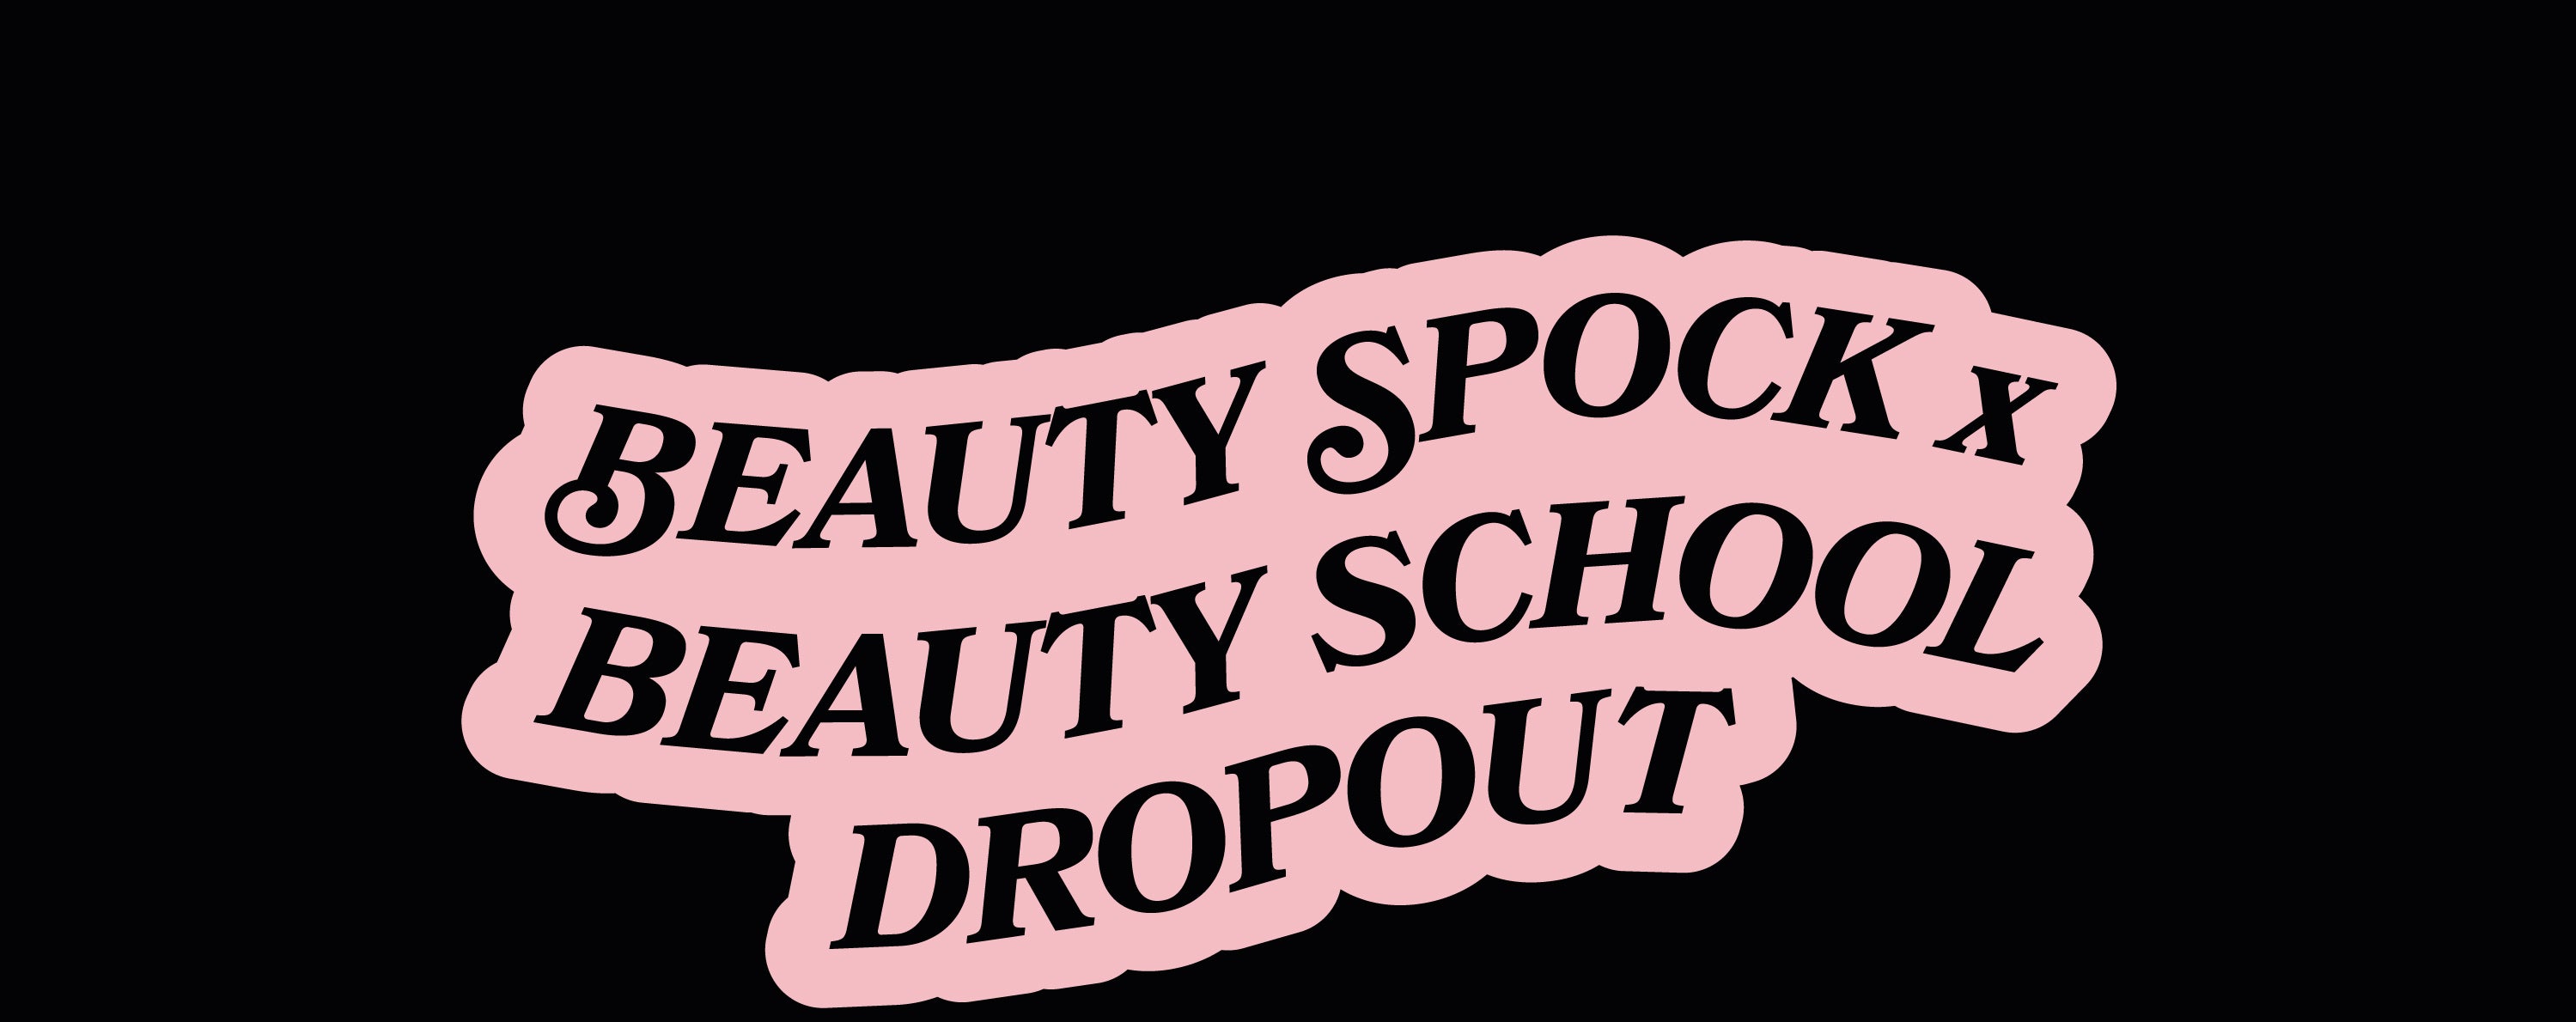 Beauty Spock x Beauty School Dropout